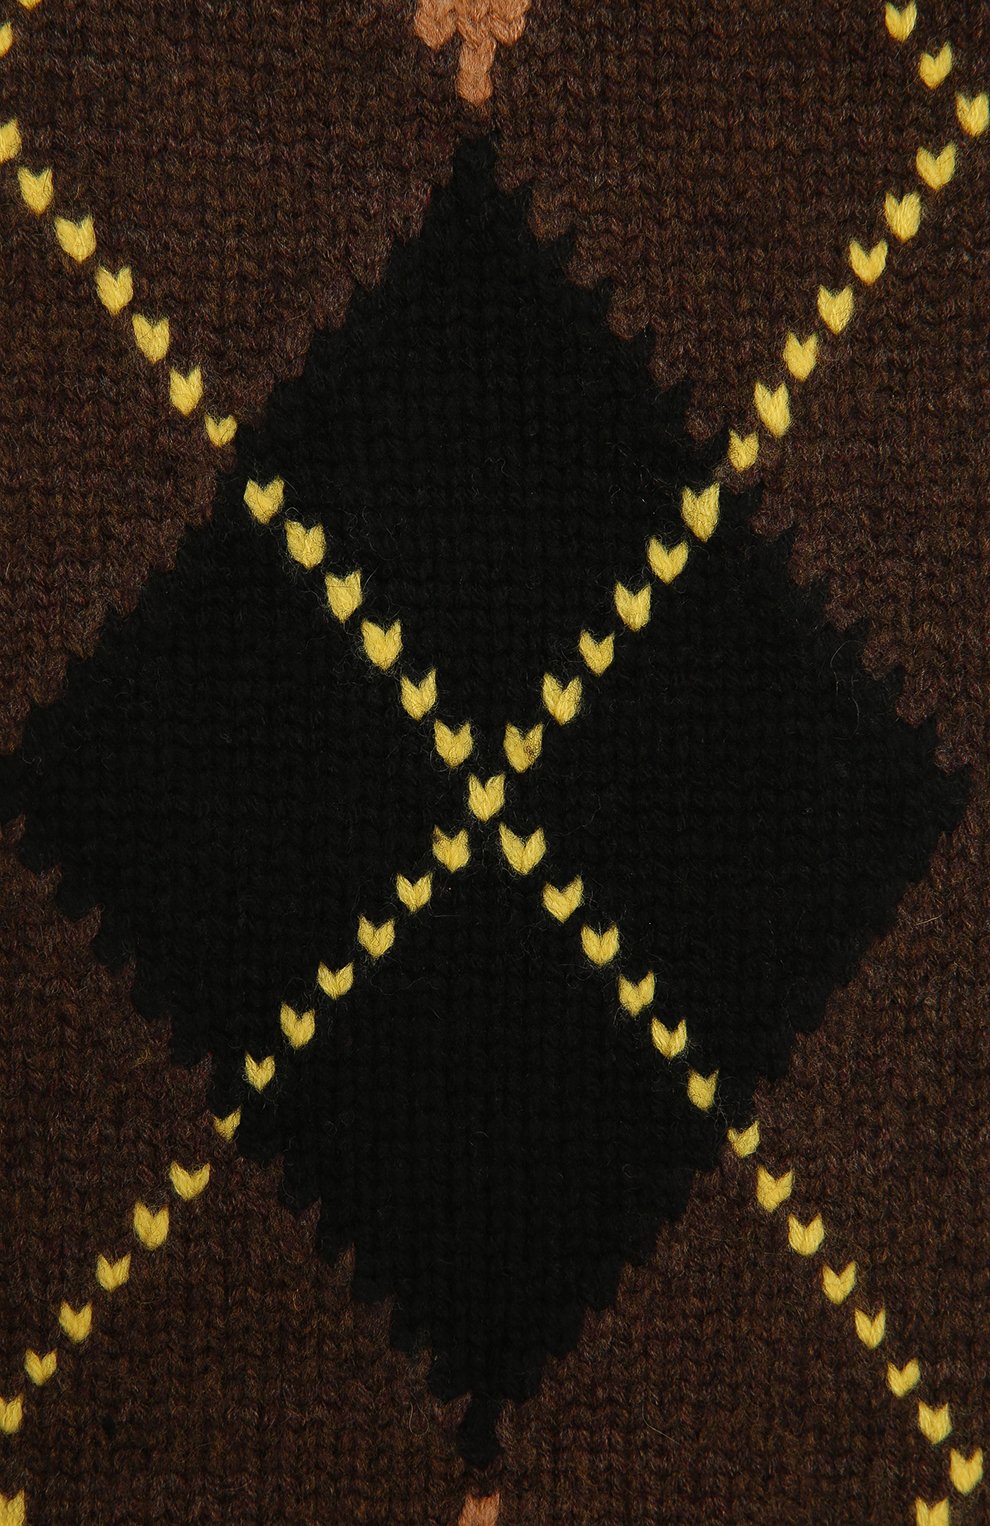 Женский шарф из шерсти и кашемира BURBERRY коричневого цвета, арт. 8037616 | Фото 2 (Материал: Текстиль, Кашемир, Шерсть)